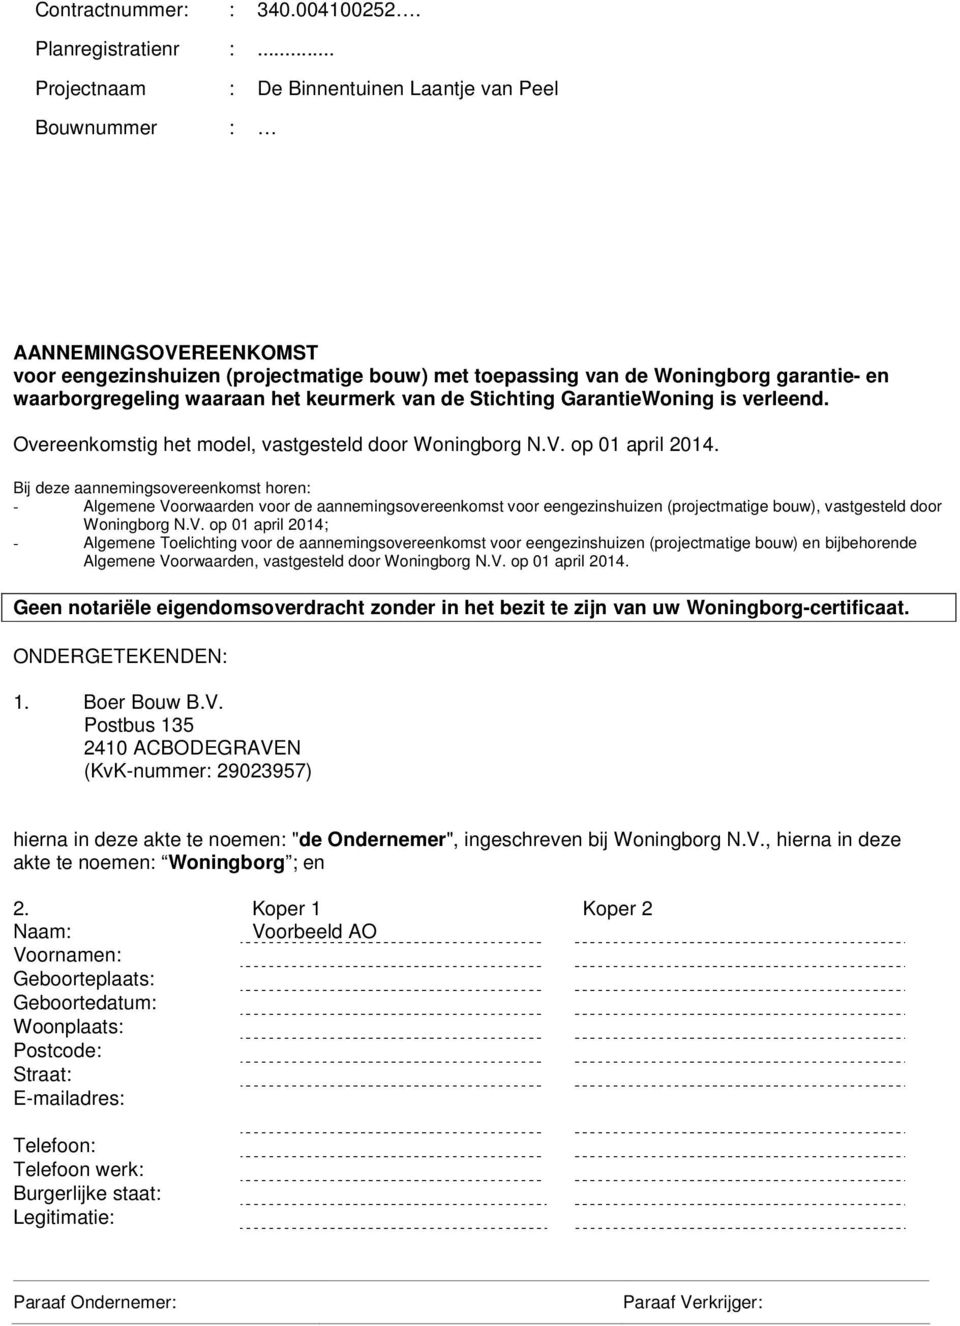 het keurmerk van de Stichting GarantieWoning is verleend. Overeenkomstig het model, vastgesteld door Woningborg N.V. op 01 april 2014.